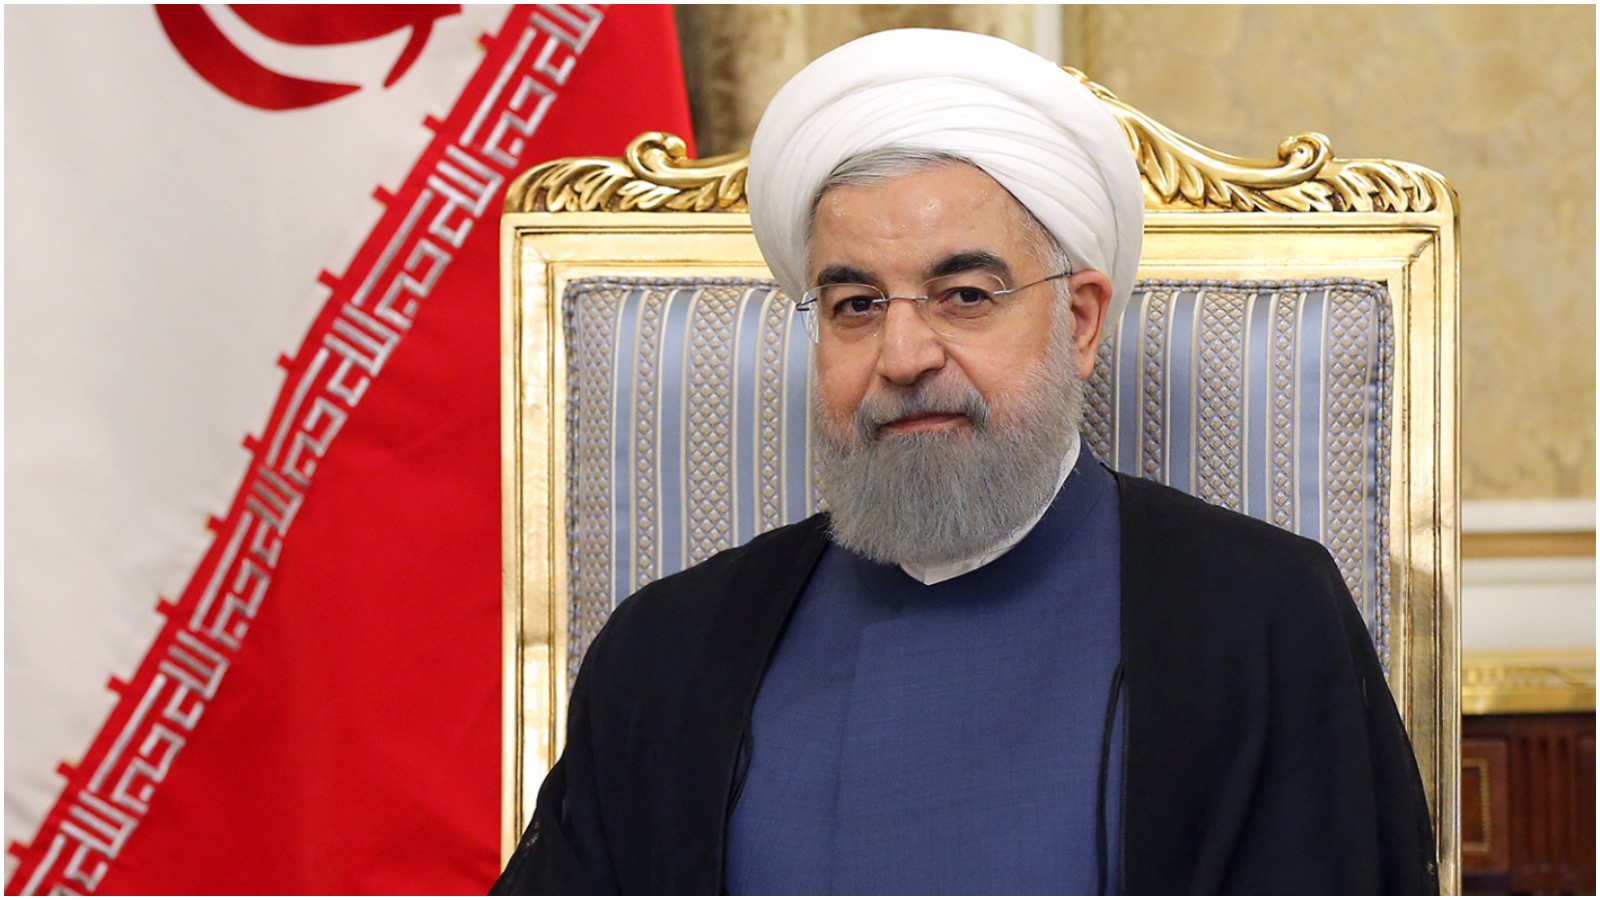 Helle Malmvig om Mellemøsten: “Iran lader til at deeskalere sit forhold til Saudi-Arabien”